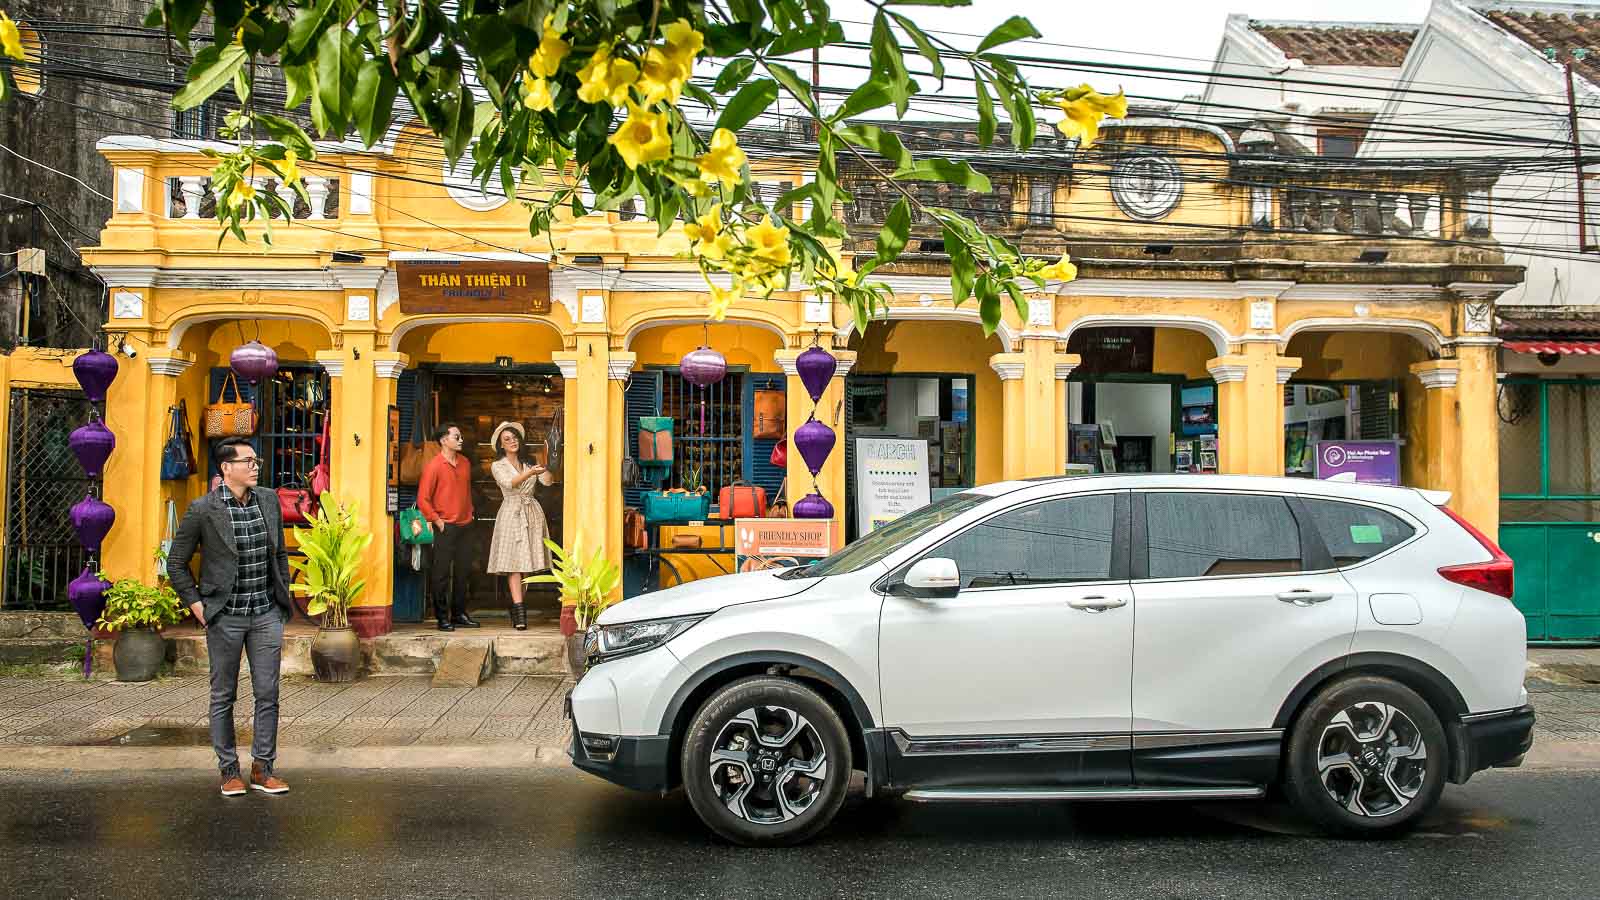 Phần lớn các mẫu ô tô phân phối tại Việt Nam đều đang được nhập khẩu từ Thái Lan, trong đó có cả hàng “hot” Honda CR-V